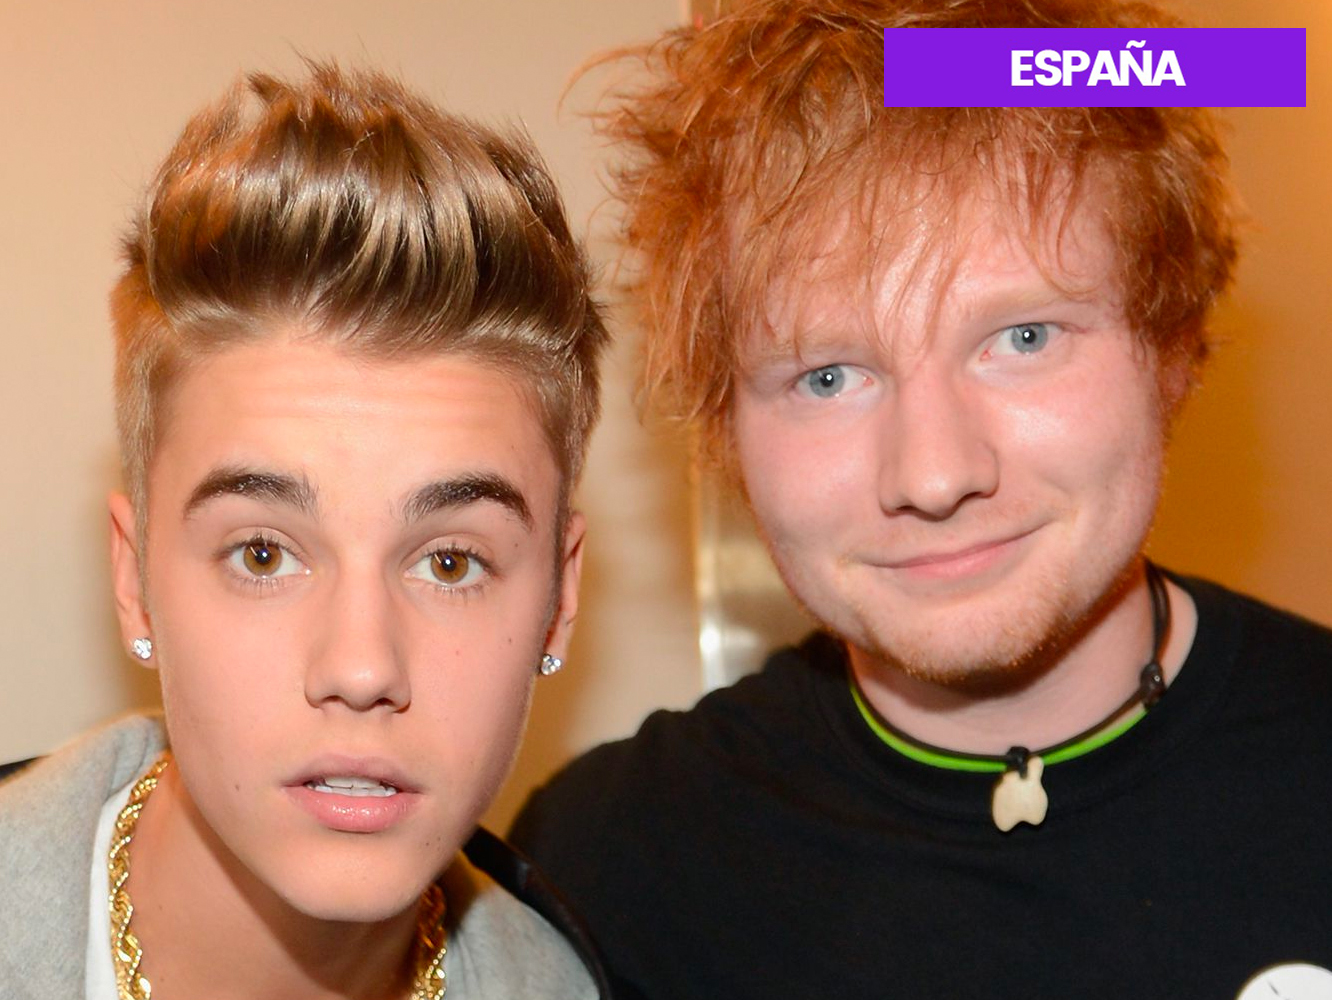 ES | Ed Sheeran y Justin Bieber se quedan a un paso del top10 con ‘I Don’t Care’